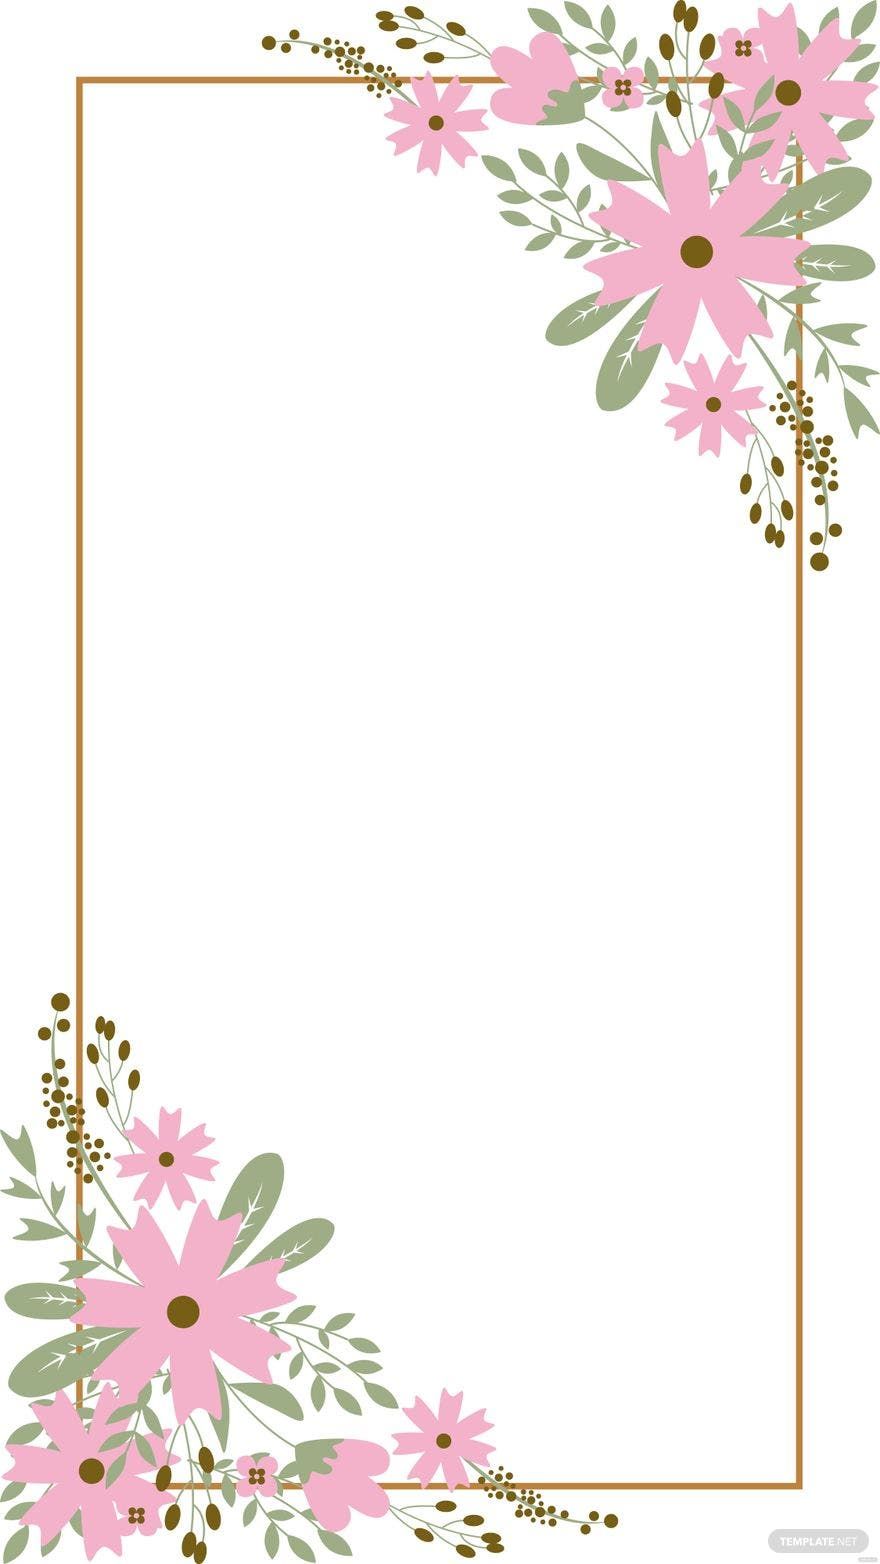 Wedding Floral Background Vector in Illustrator, EPS, SVG, JPG, PNG